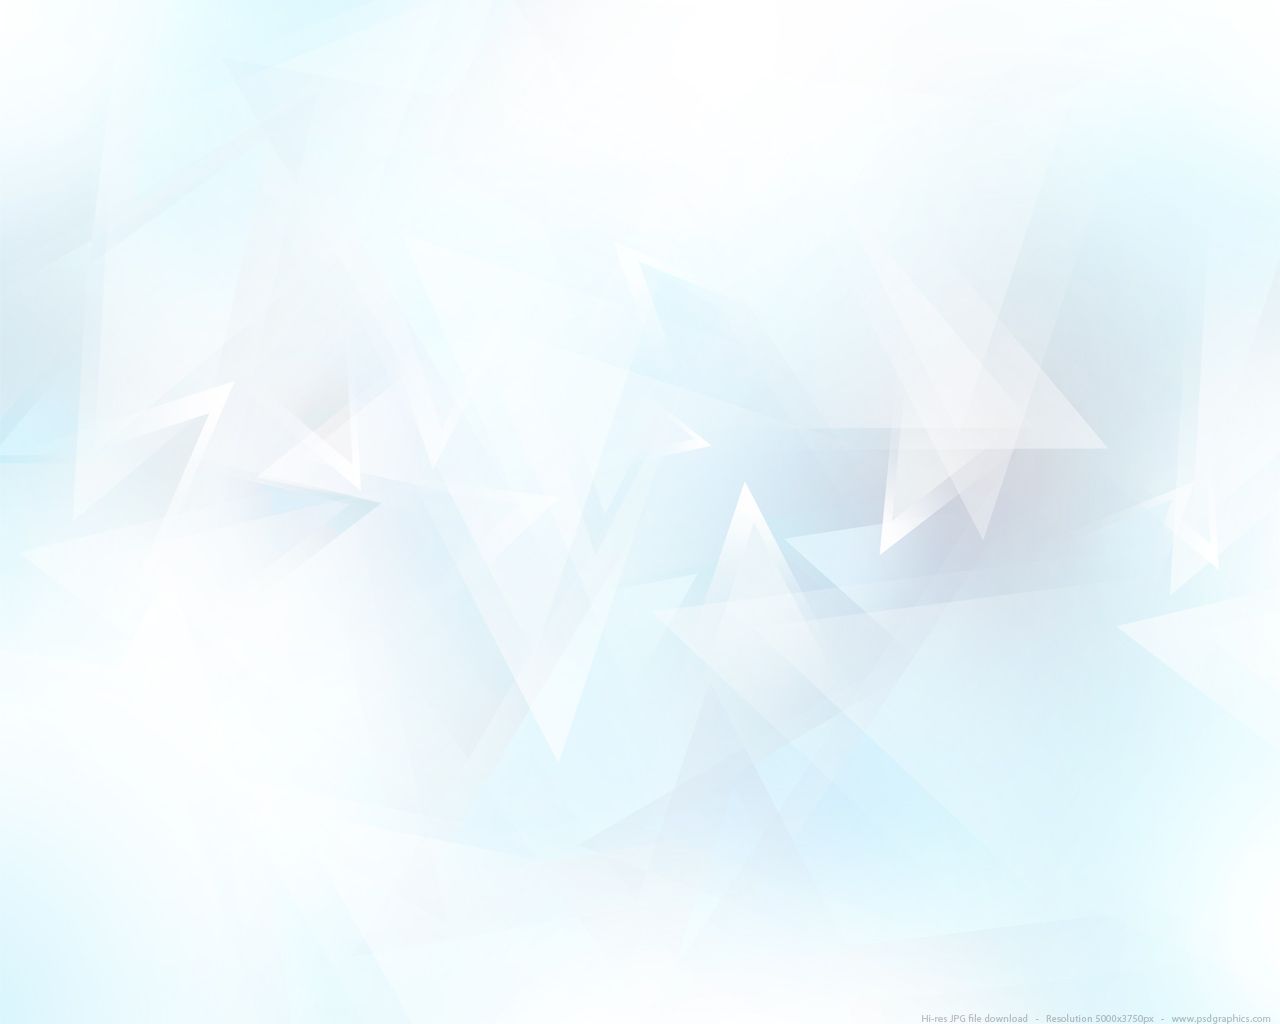 دانلود تصویر نورانی سفید و آبی با افکت انتزاعی مخصوص فتوشاپ